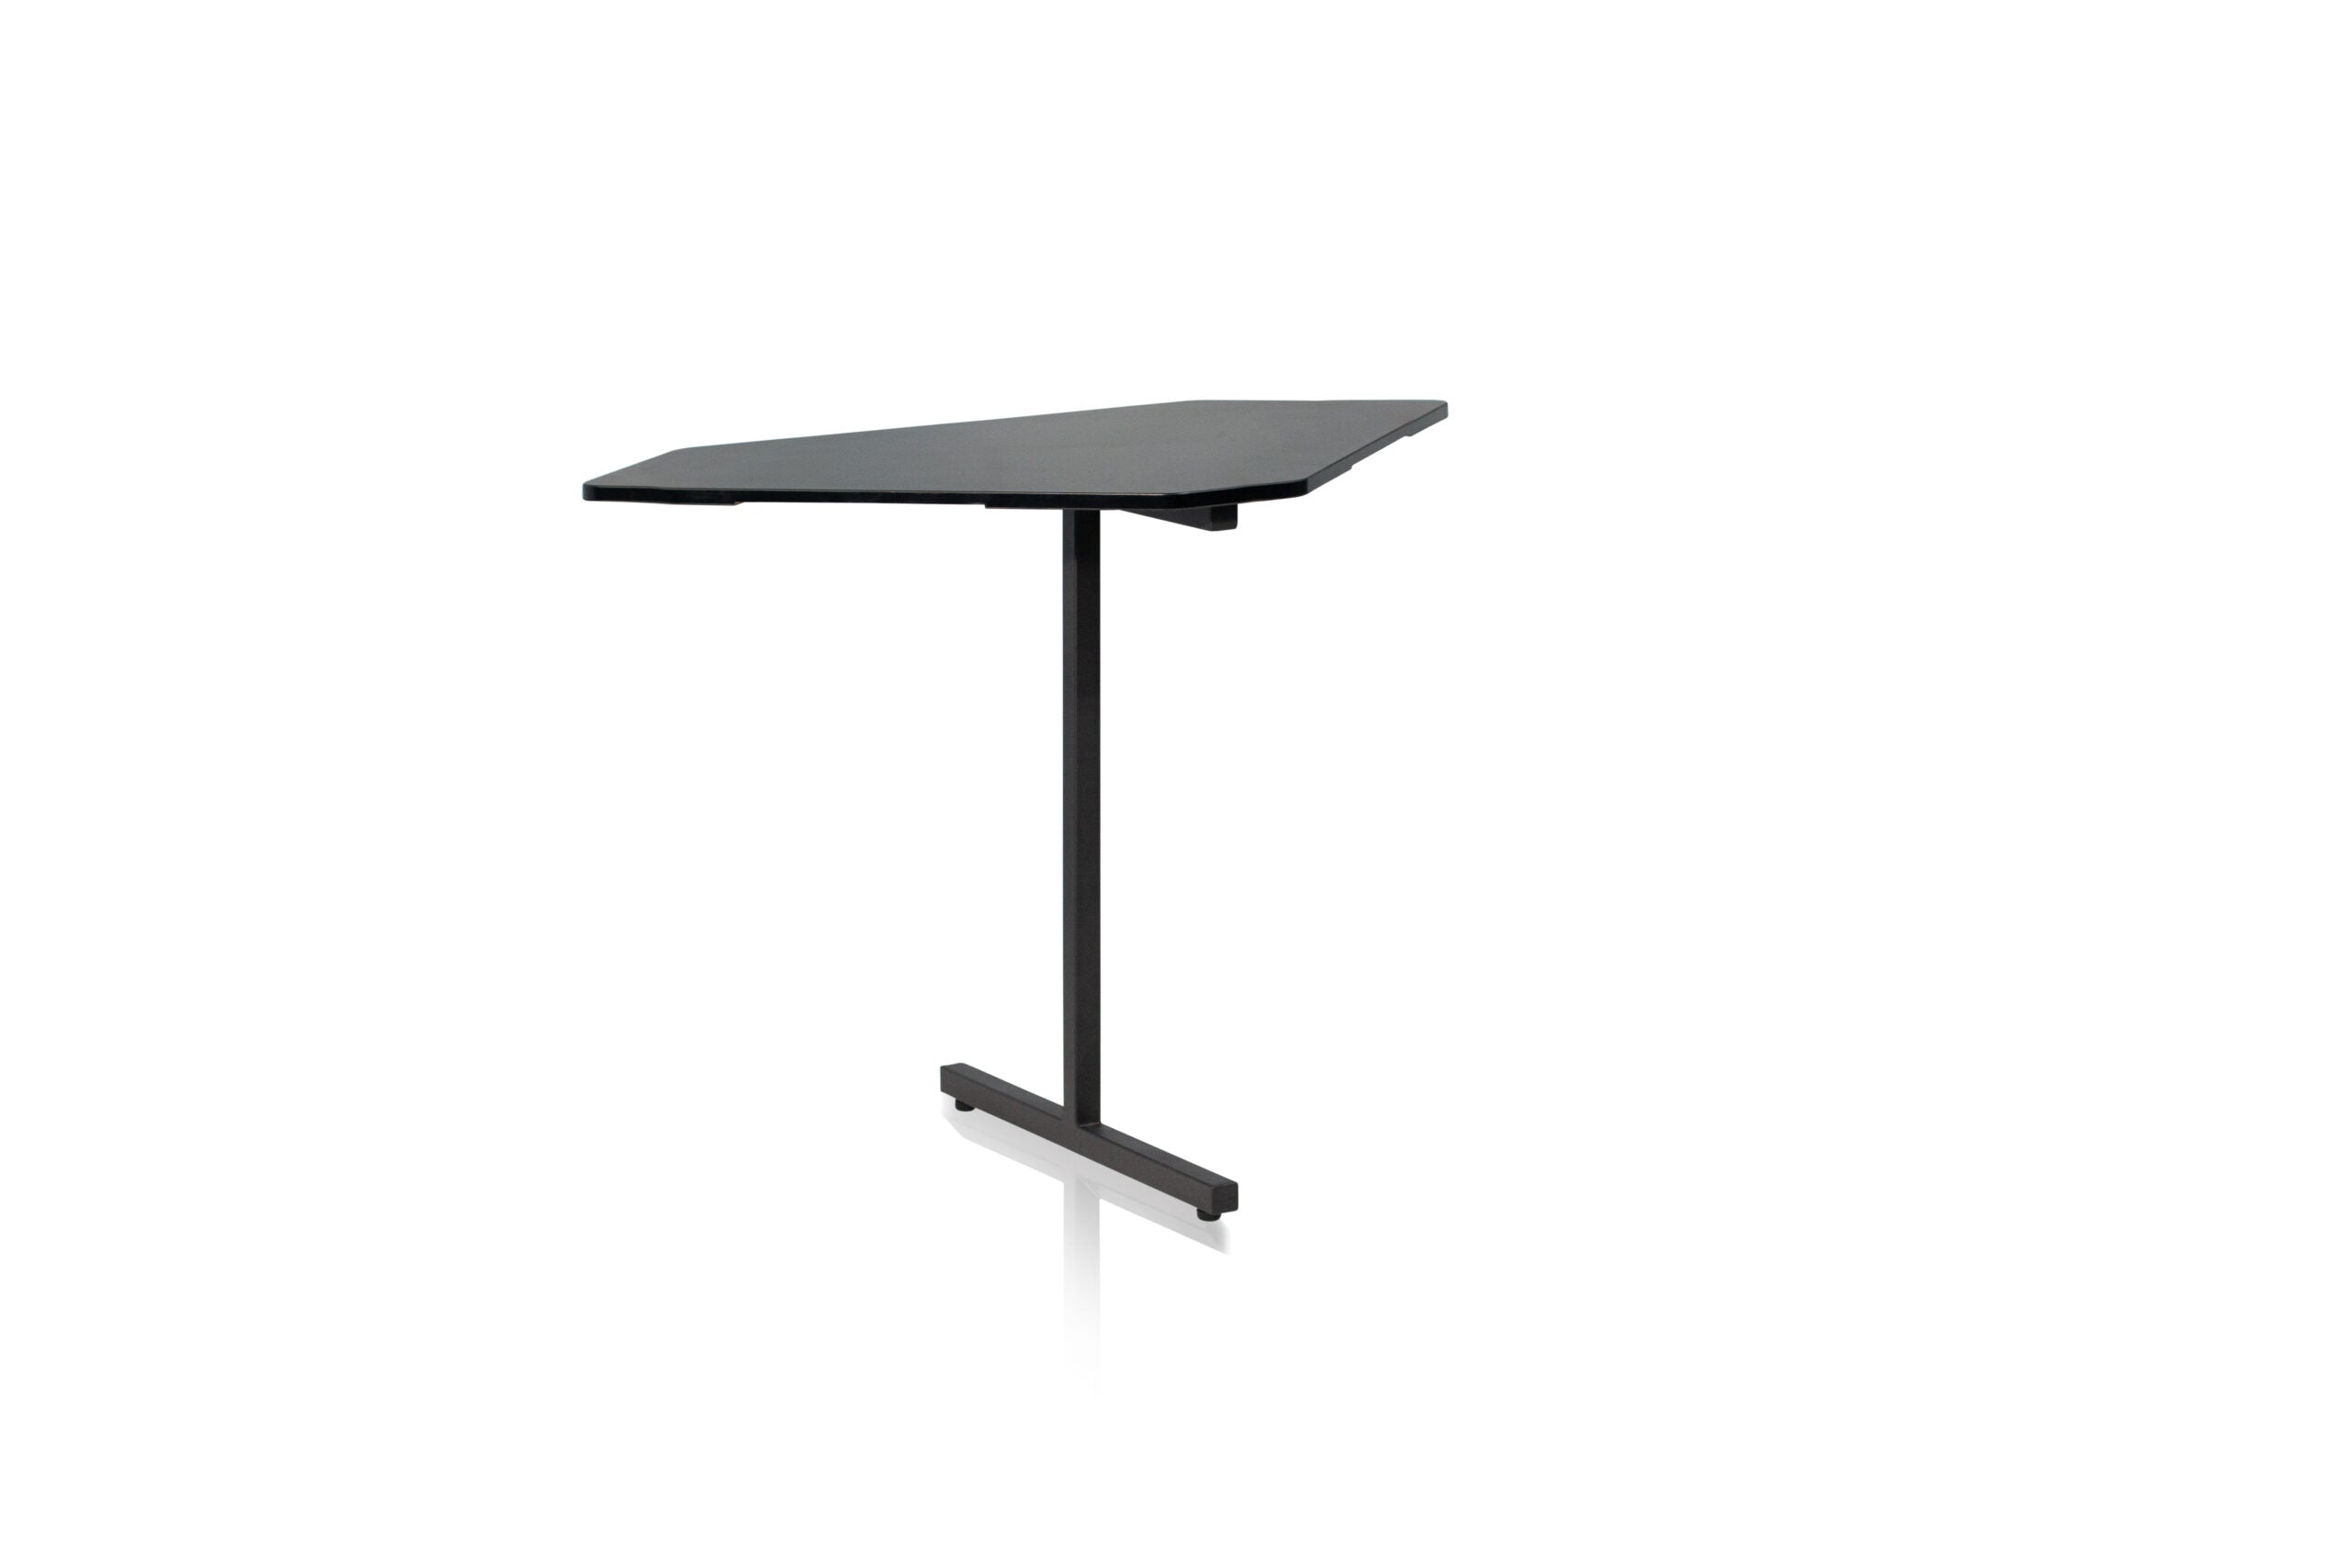 Gator Frameworks | Desk Set w/ Main Desk, Corner, Rack - BLK